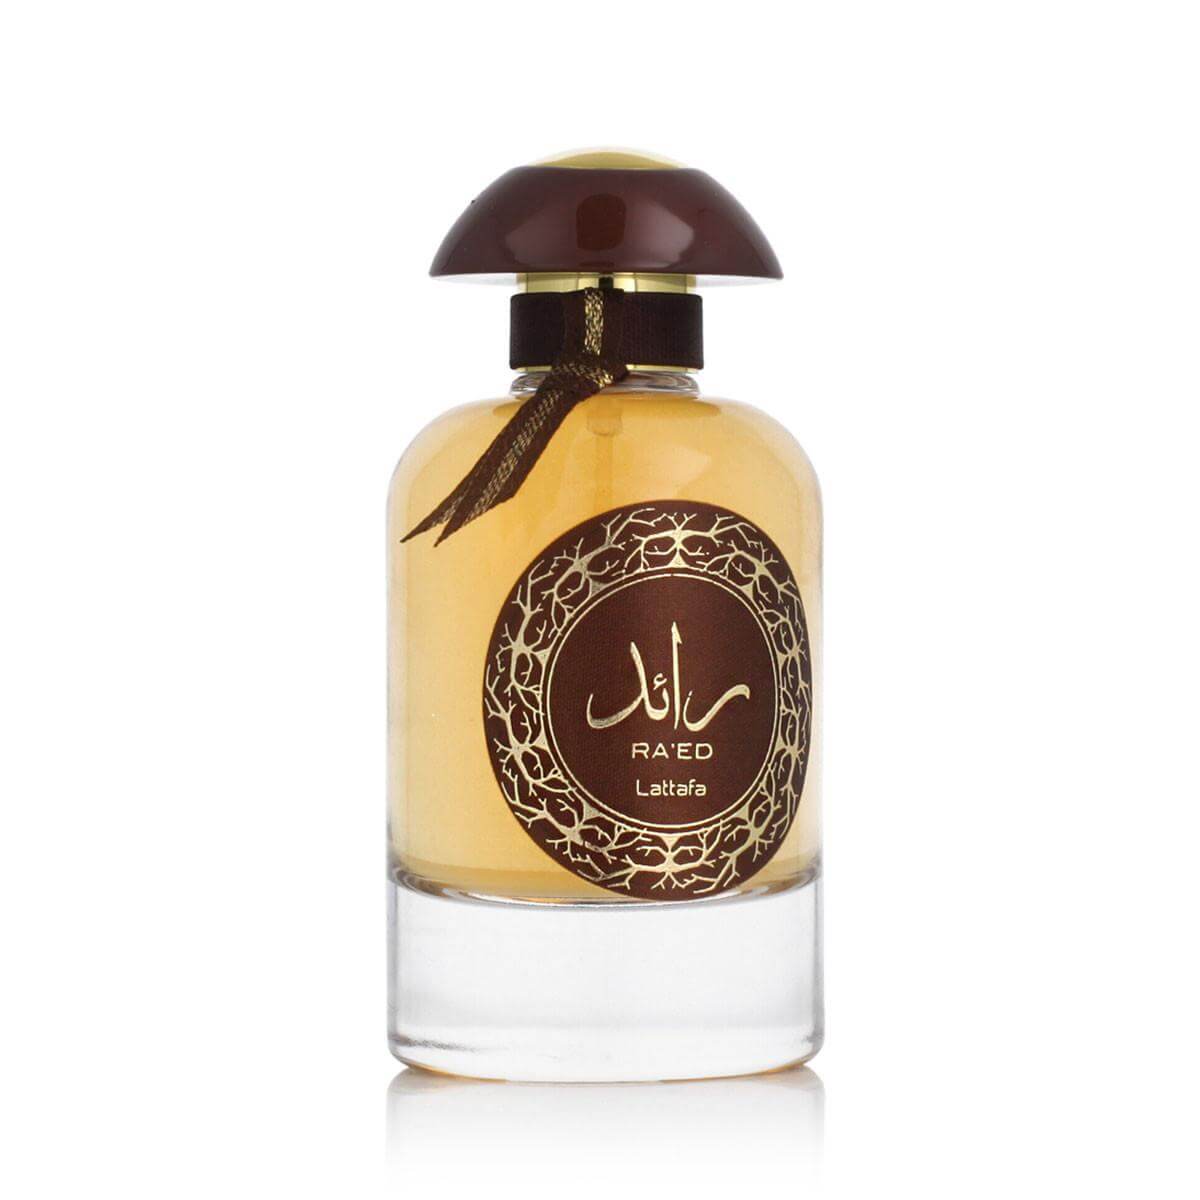 Ra’ed Oud (Raed Oud) Perfume Eau De Perfume 100Ml By Lattafa Perfumes